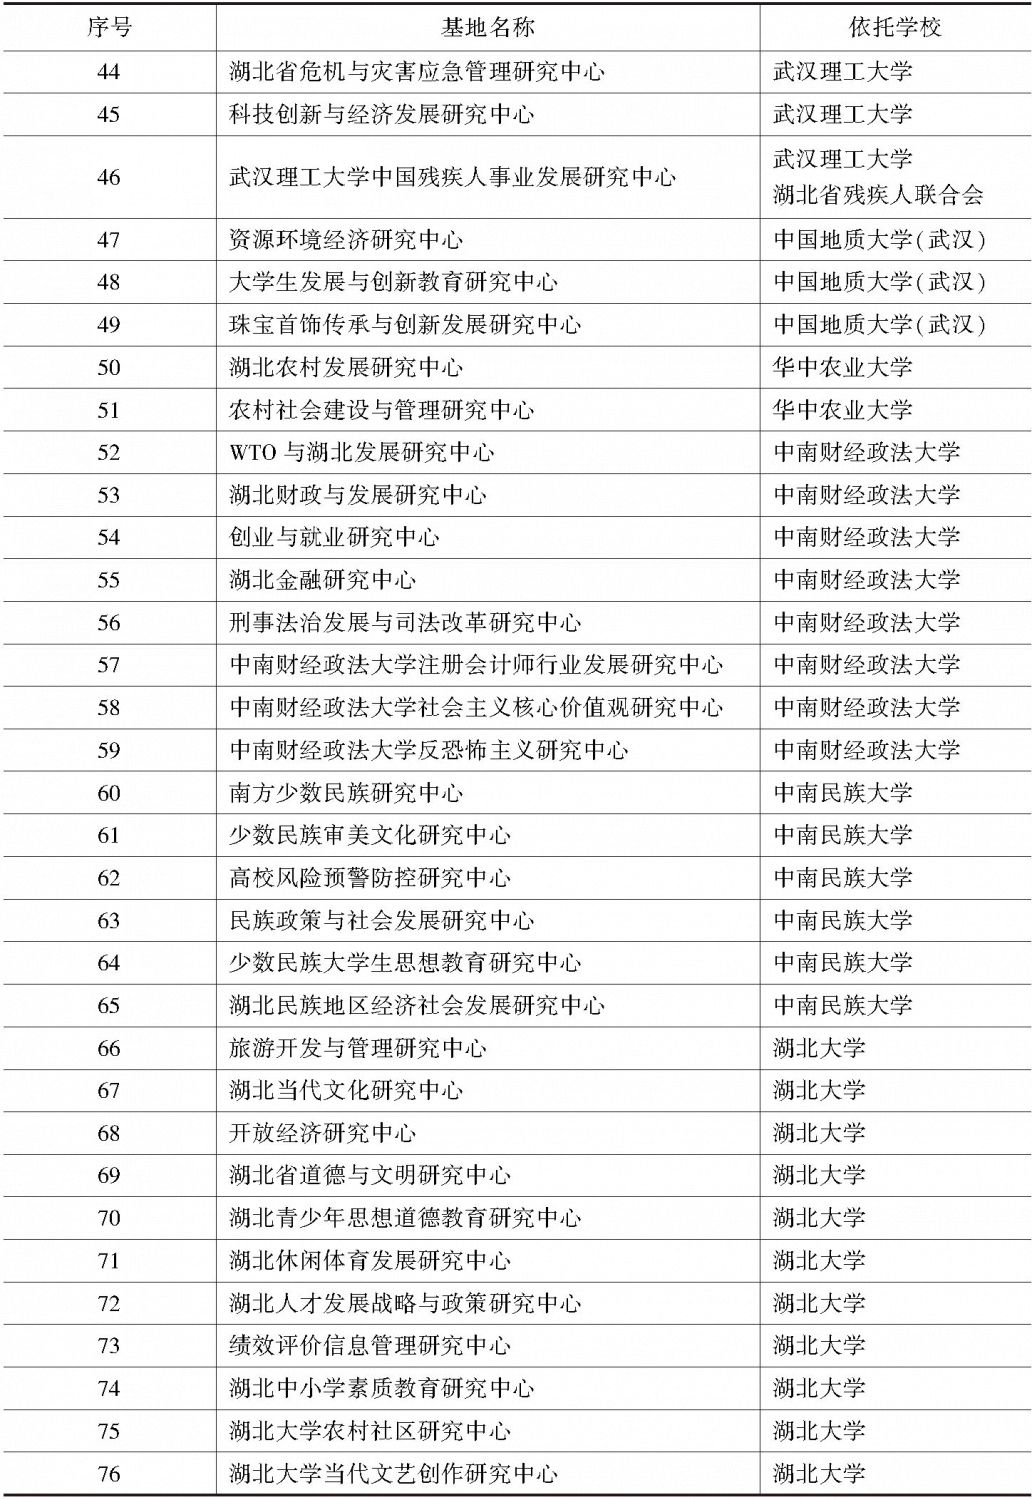 湖北省高等学校人文社会科学重点研究基地-续表2